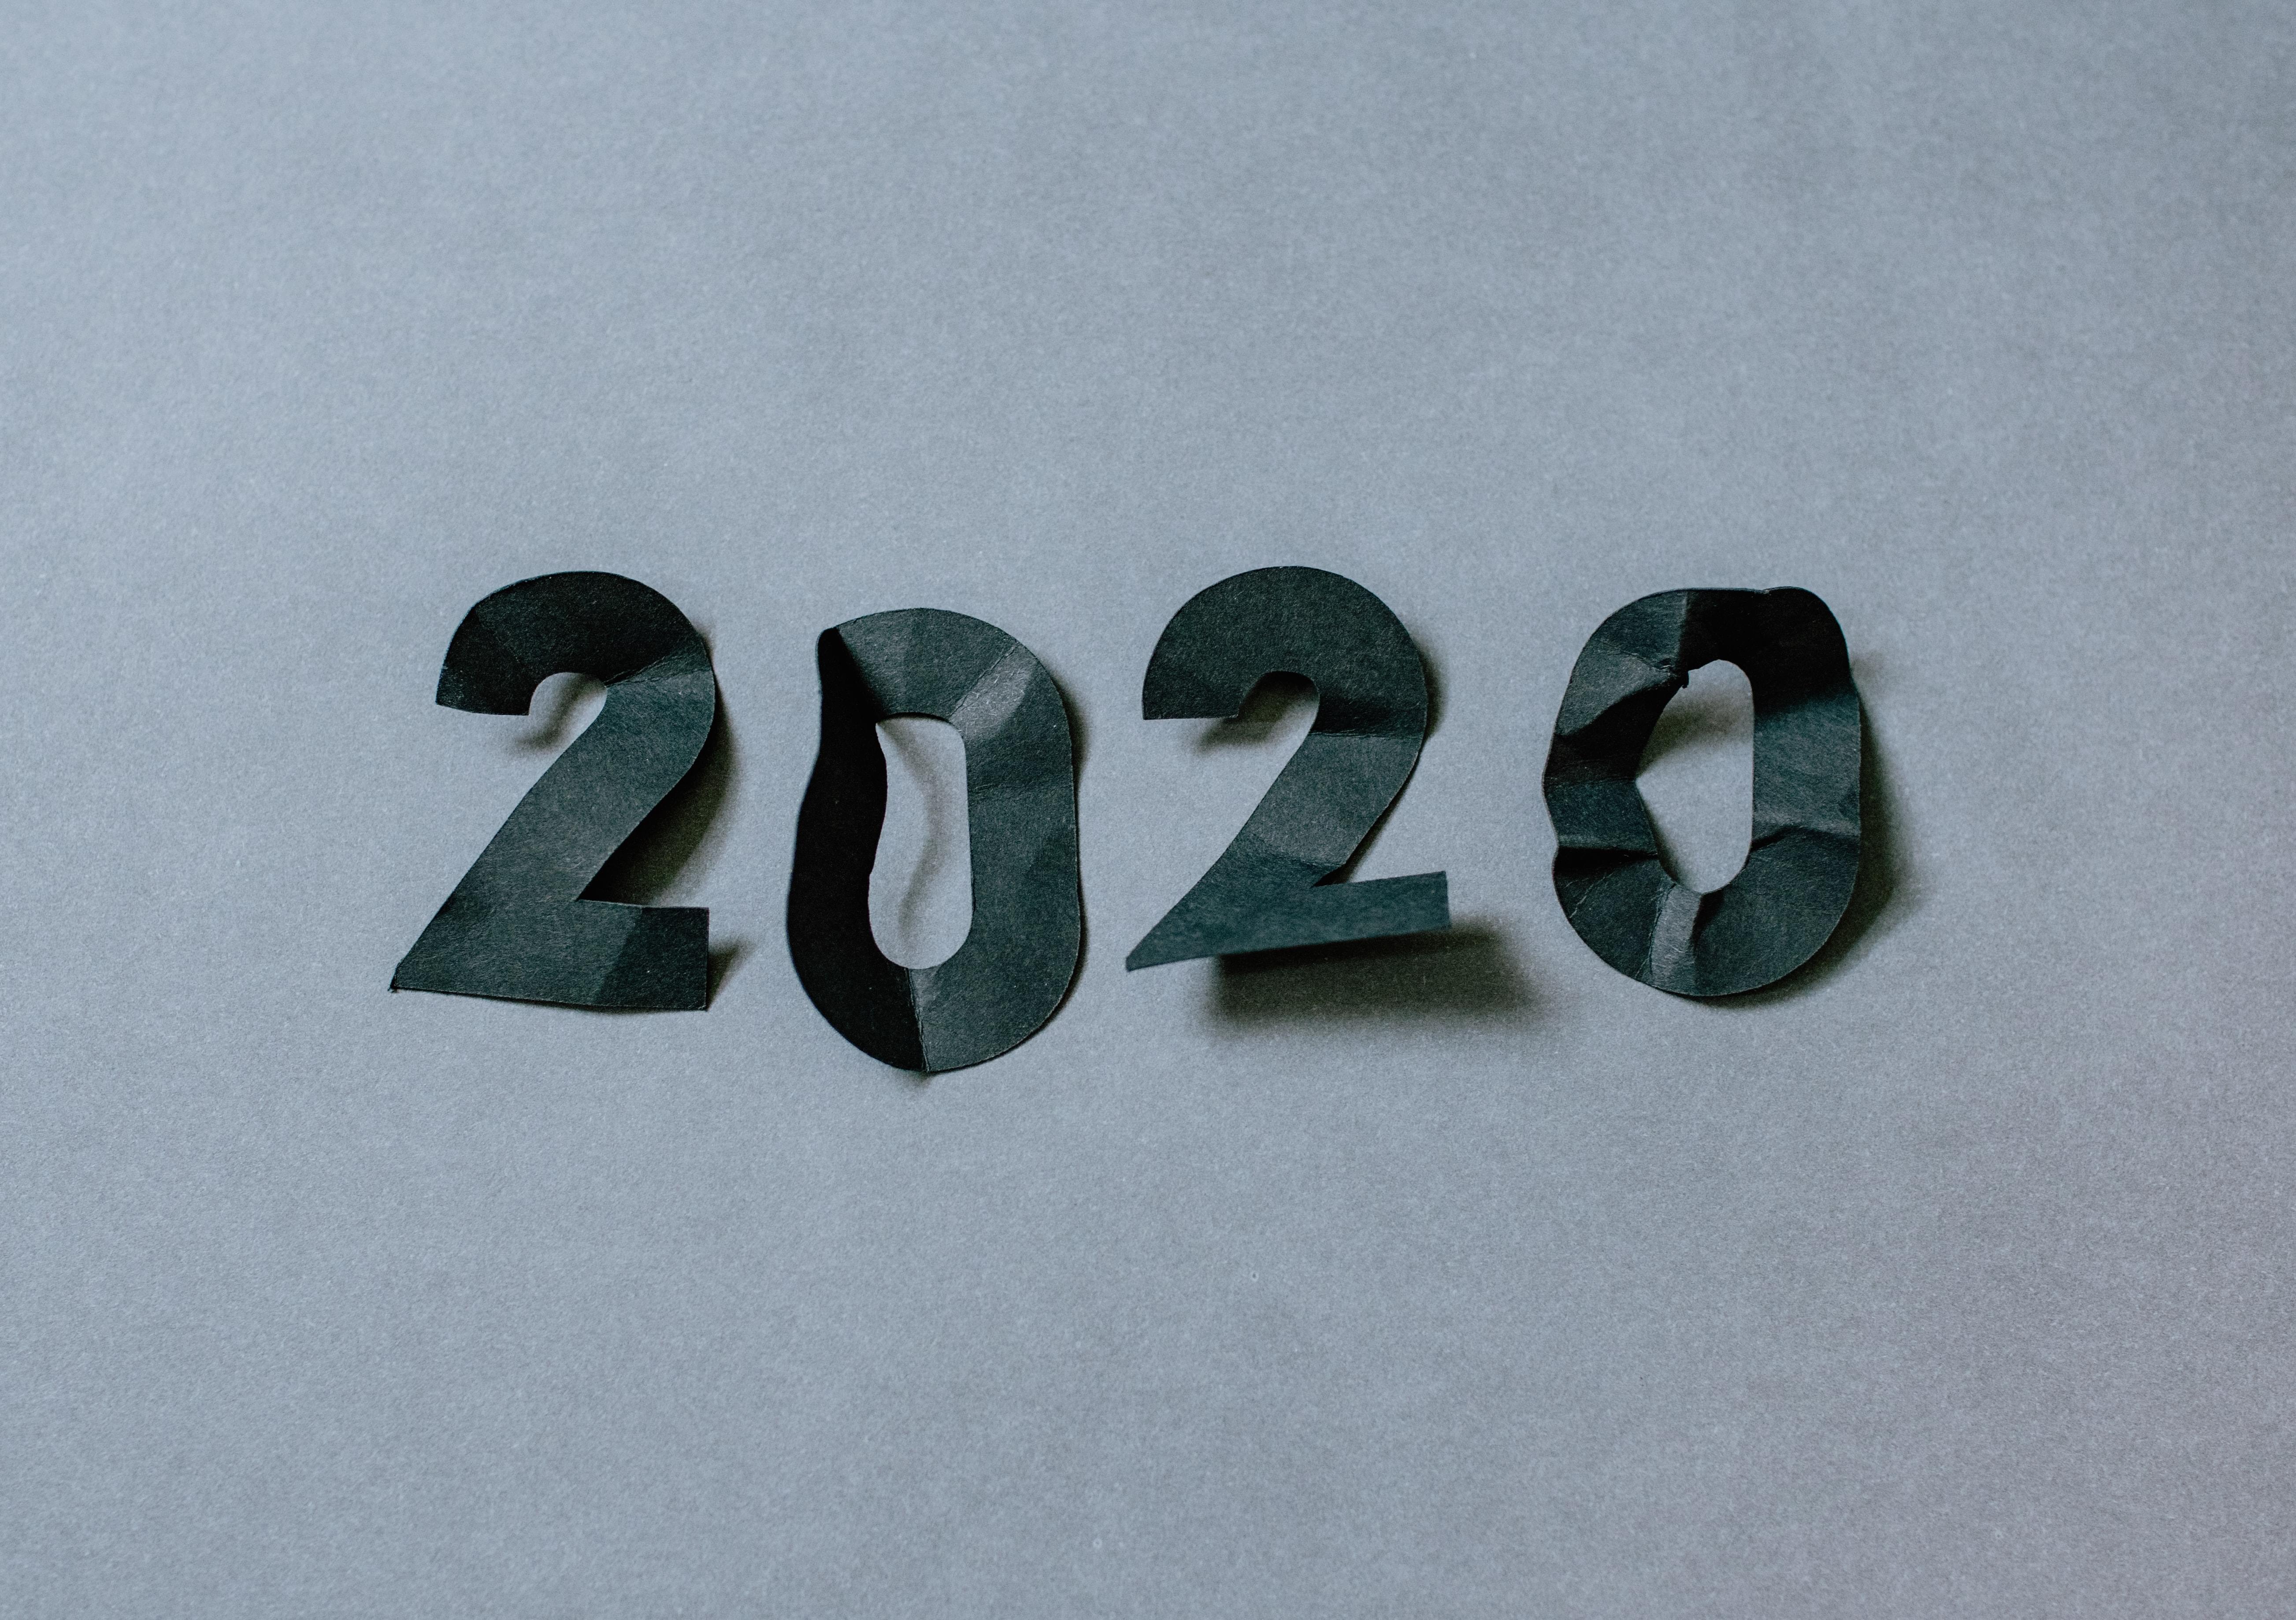 2020. Foto de Kelly Sikkema en Unsplash